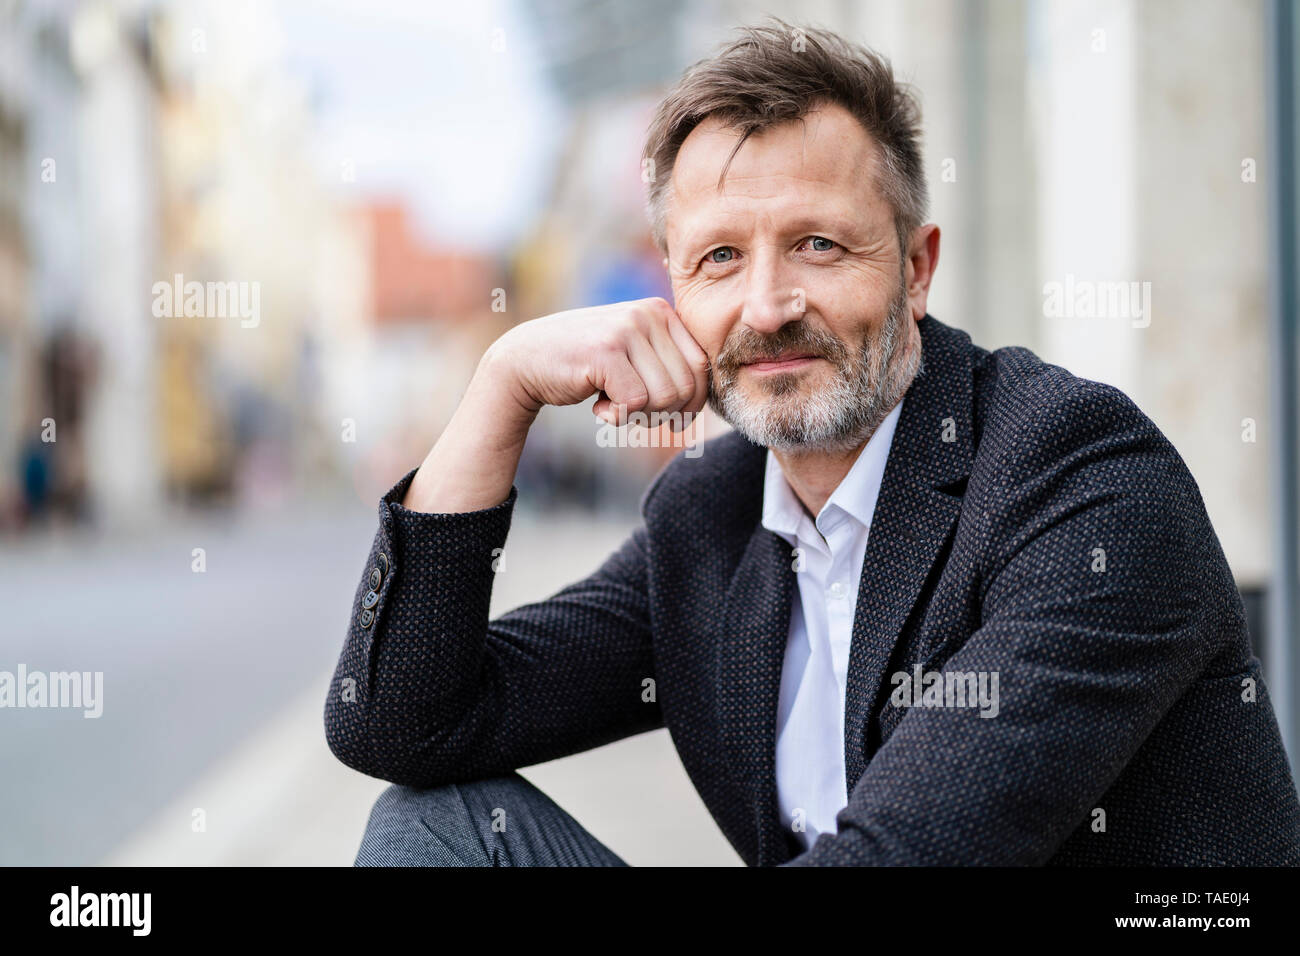 Portrait de contenu mature businessman avec barbe grisonnante Banque D'Images